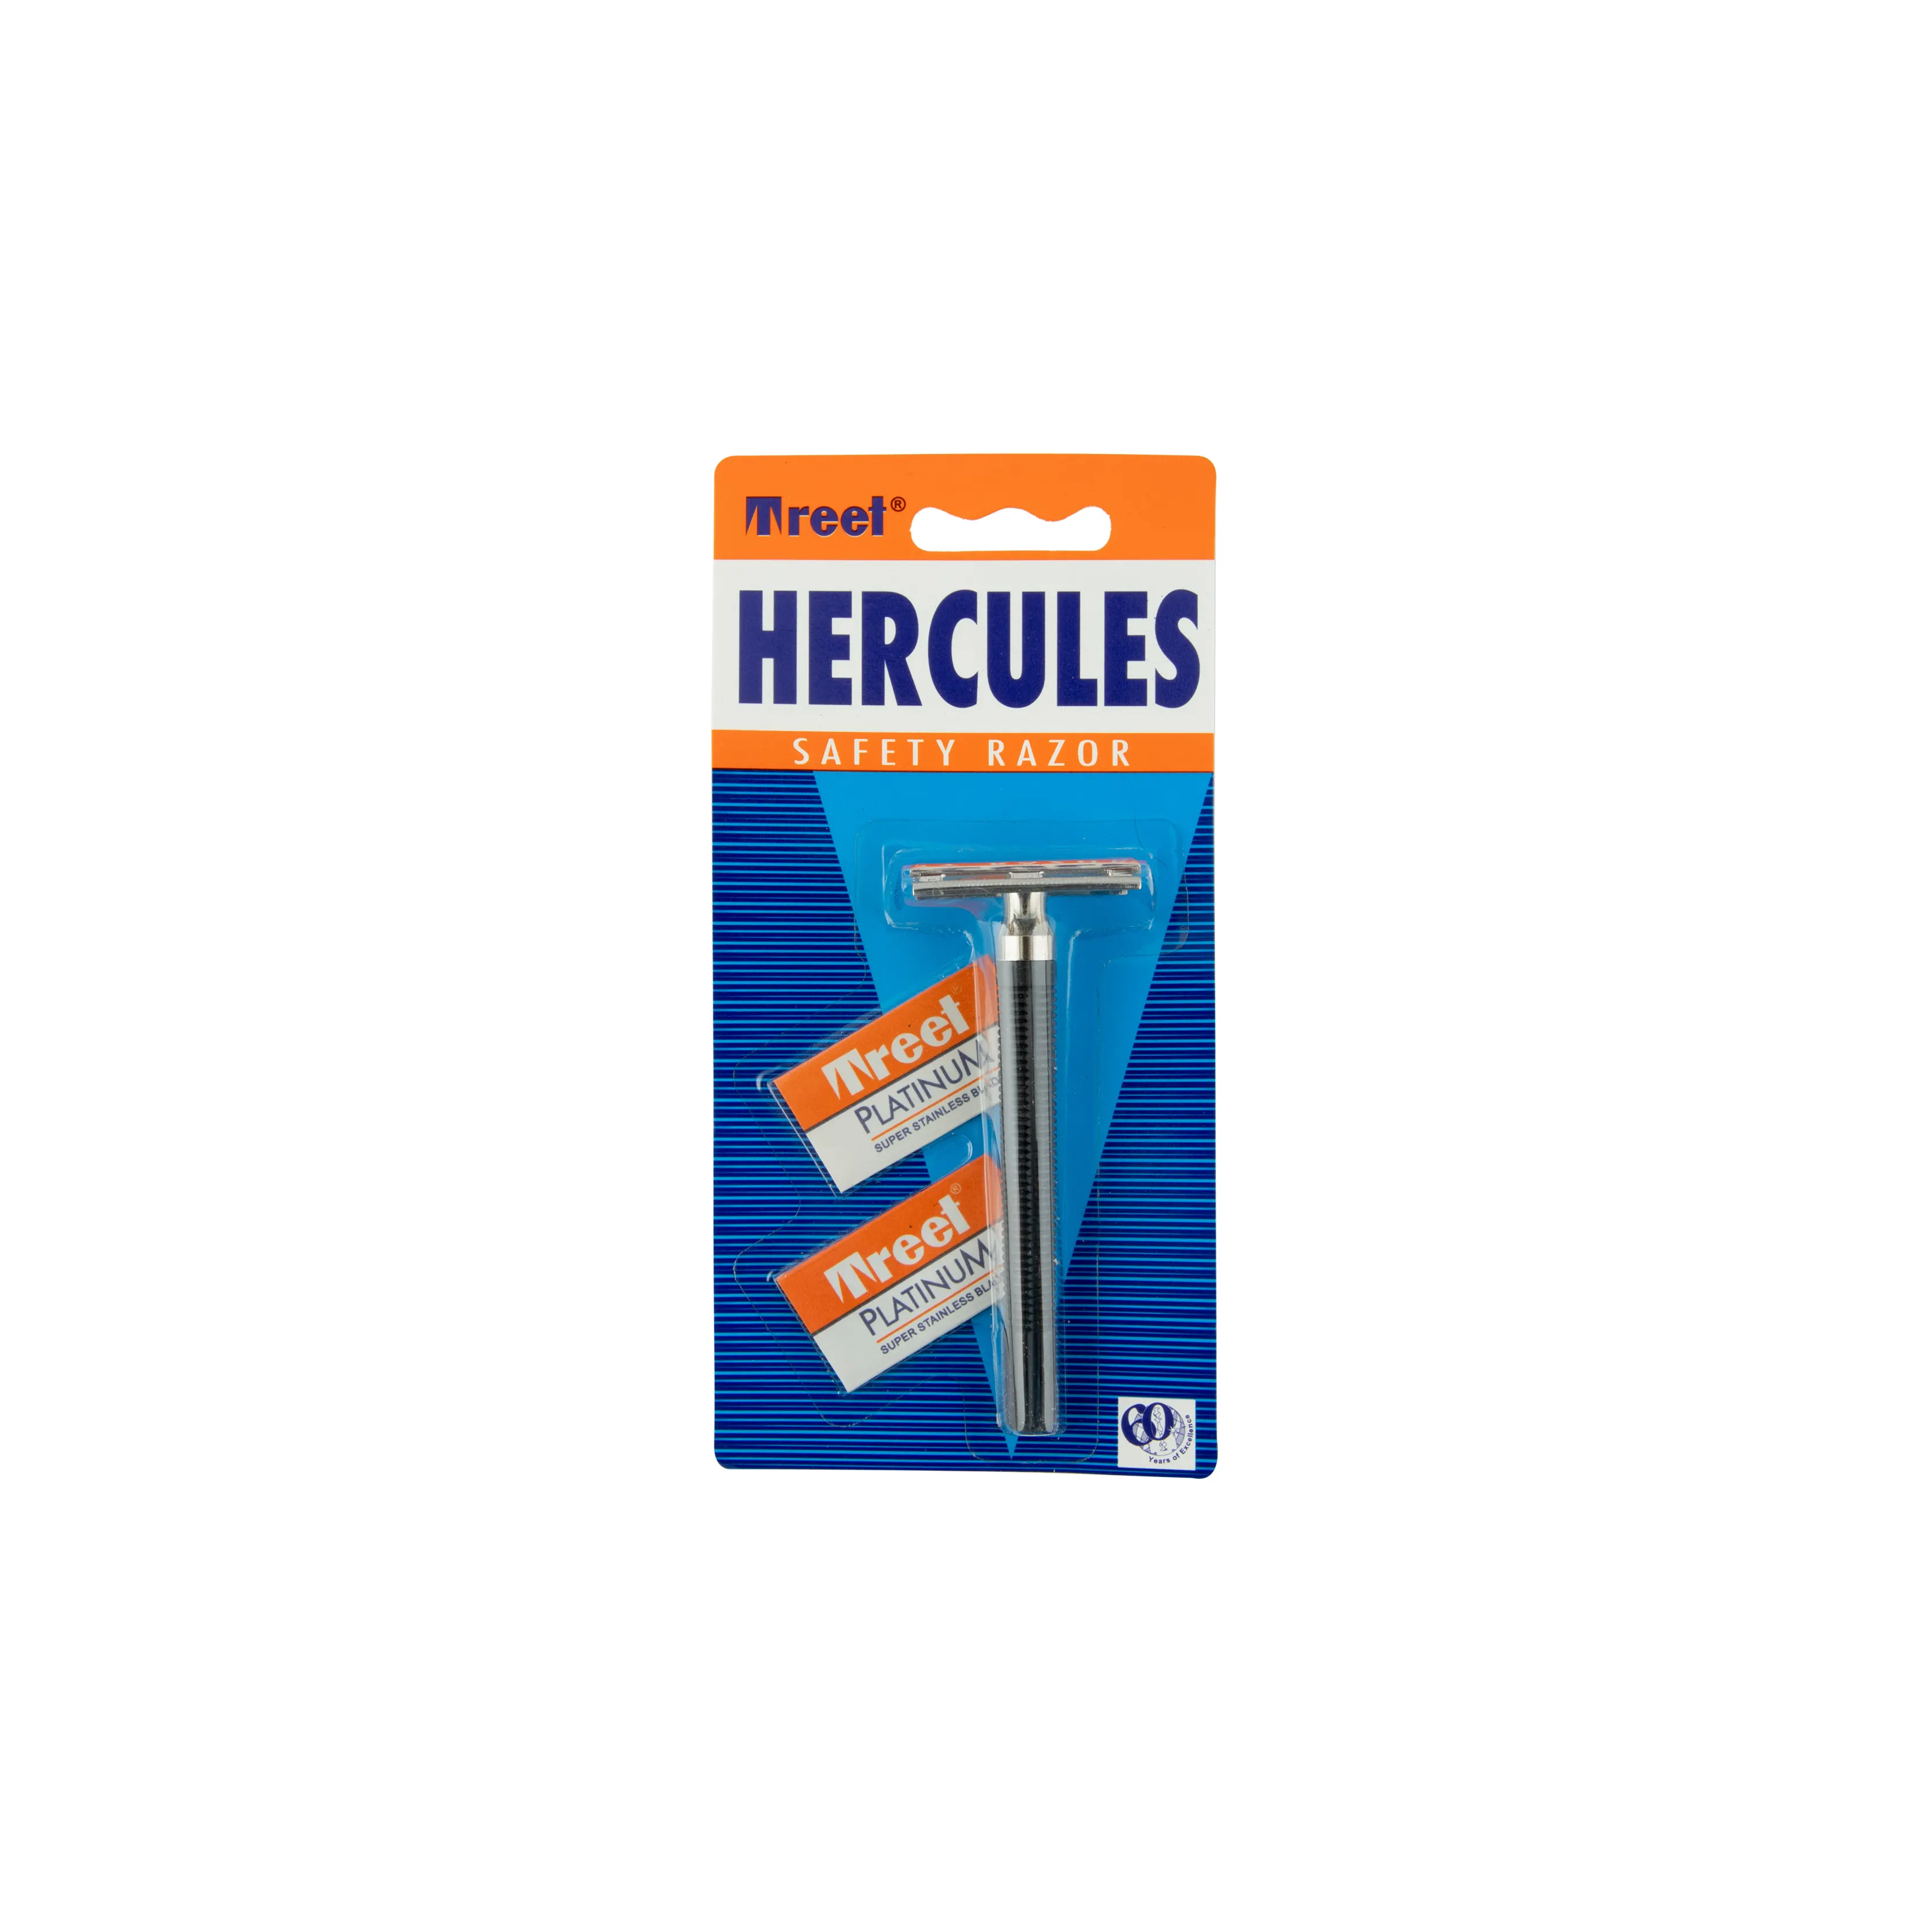 Hercules Safety Razor (1 Set = Safety Razor + 2 Treet Platinum Super Blades)